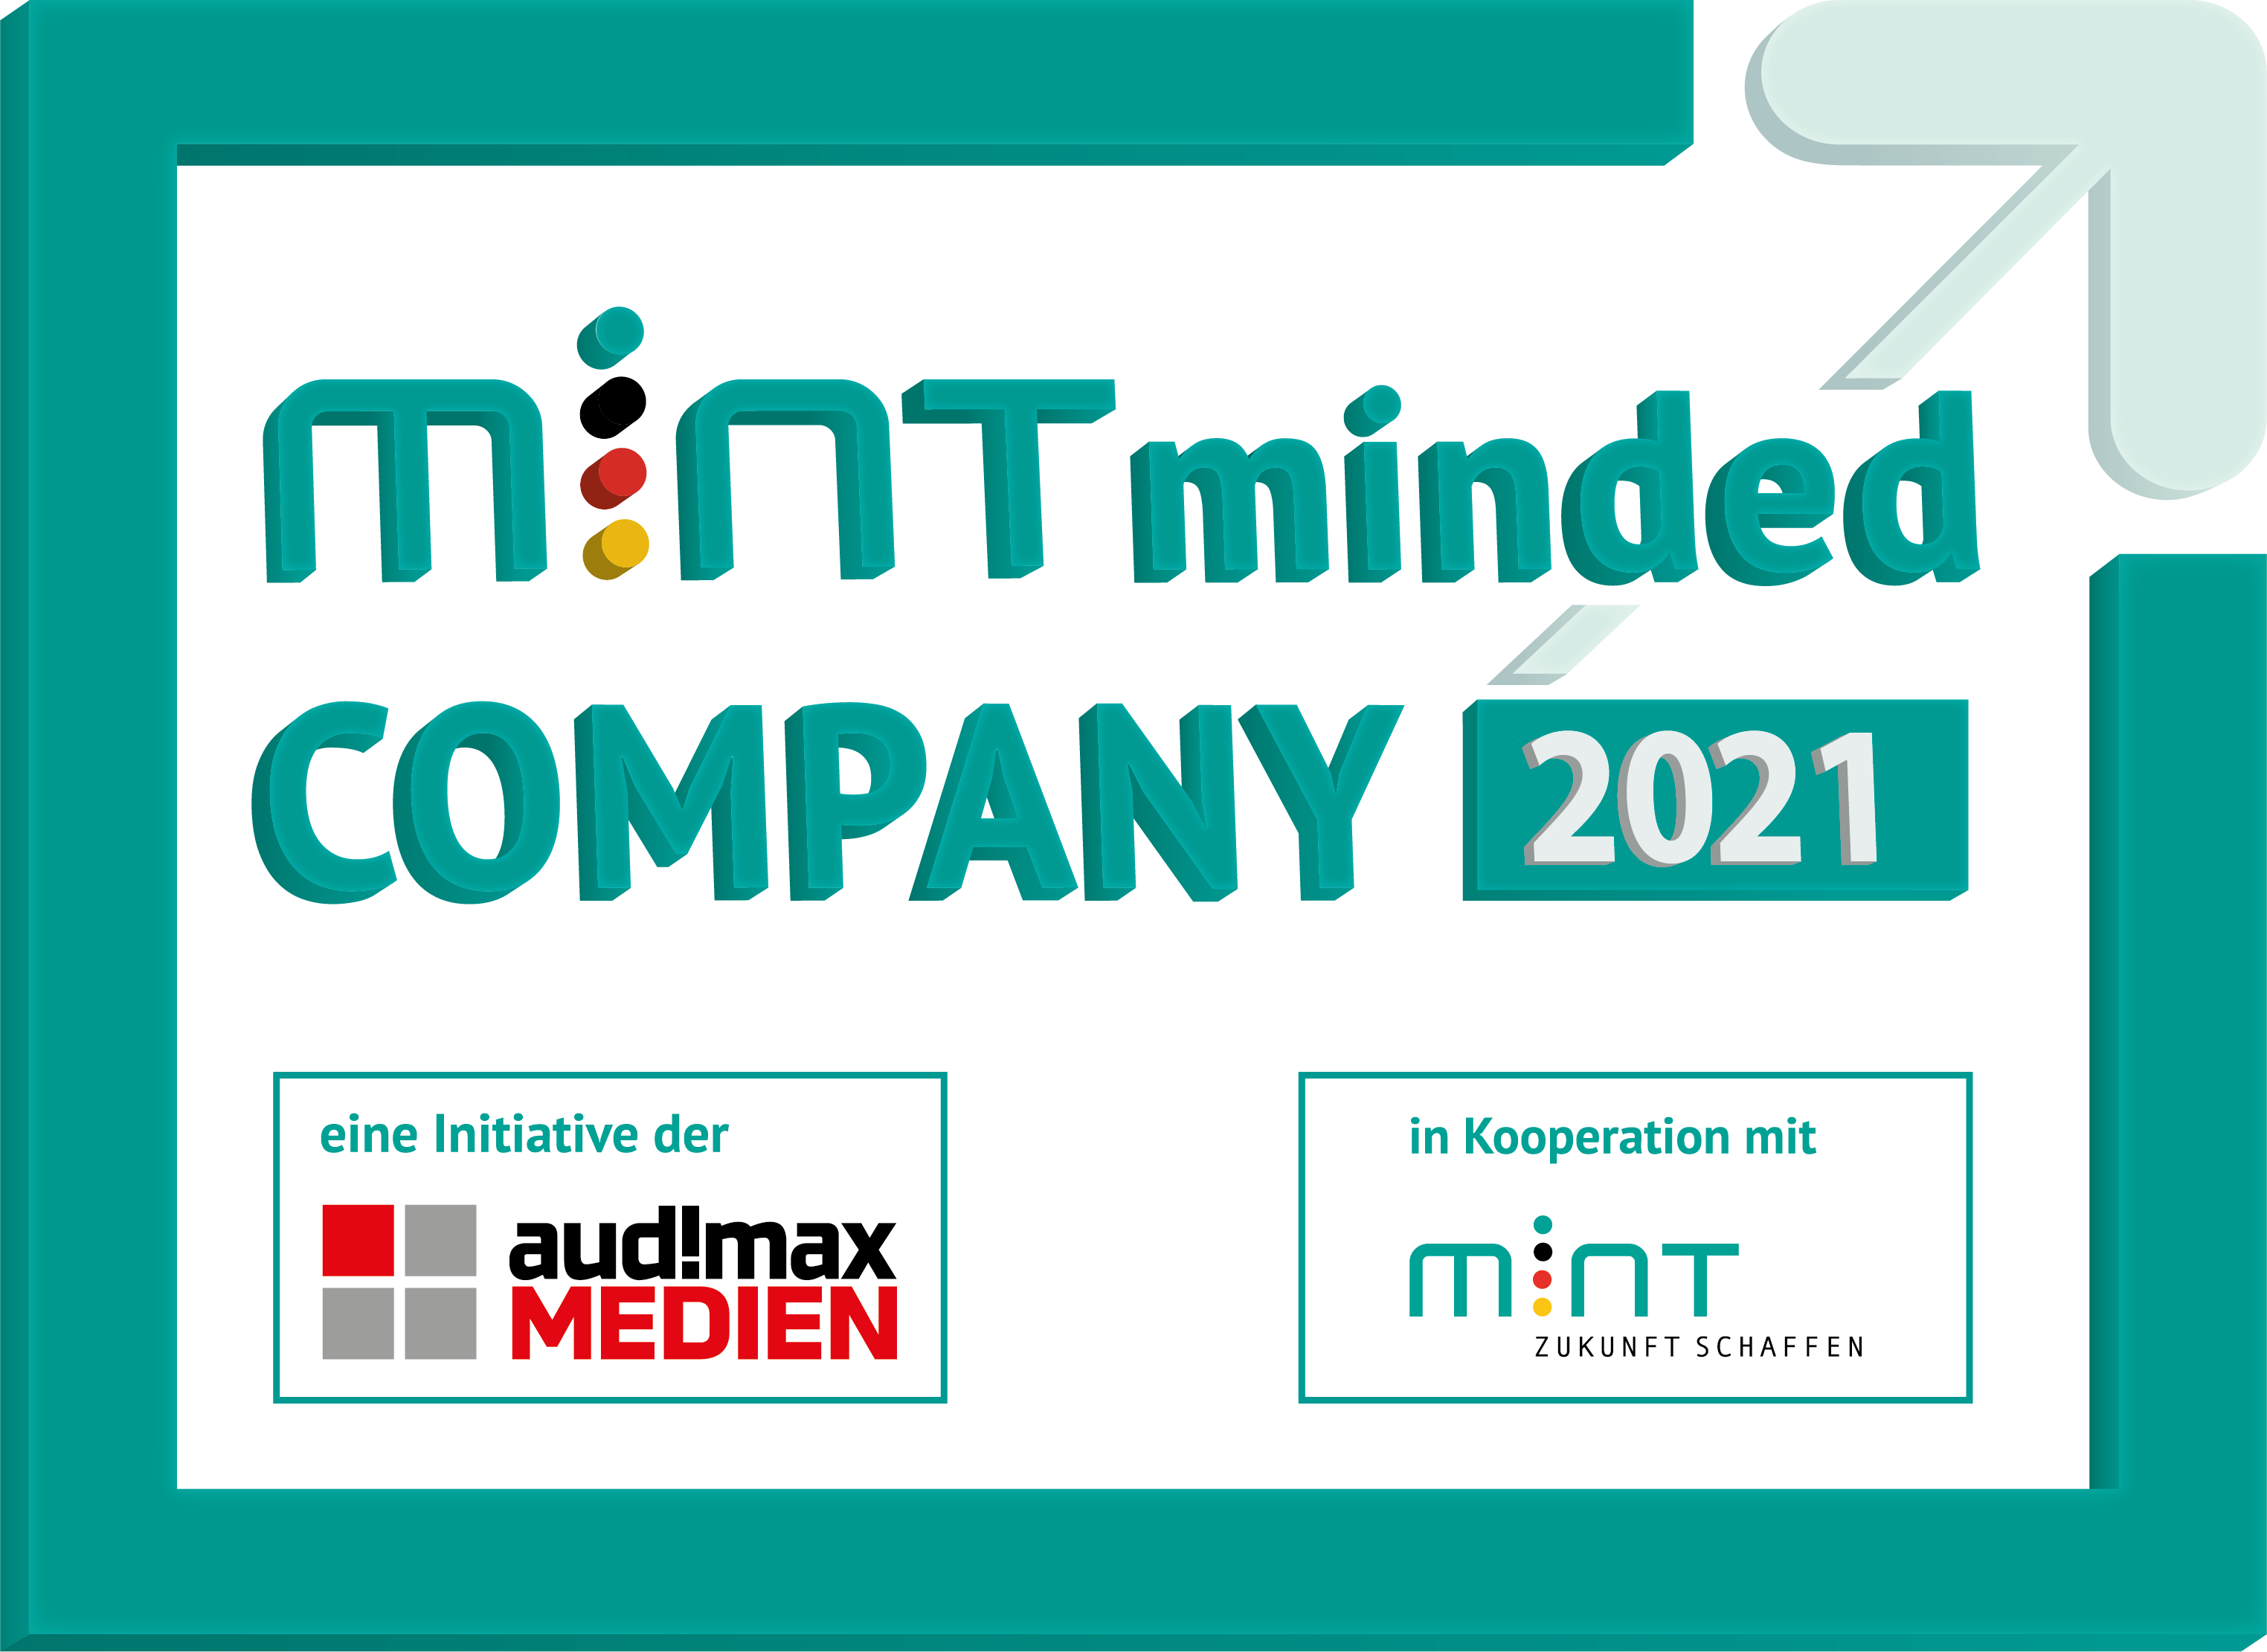 Award: Mint minded Company 2021